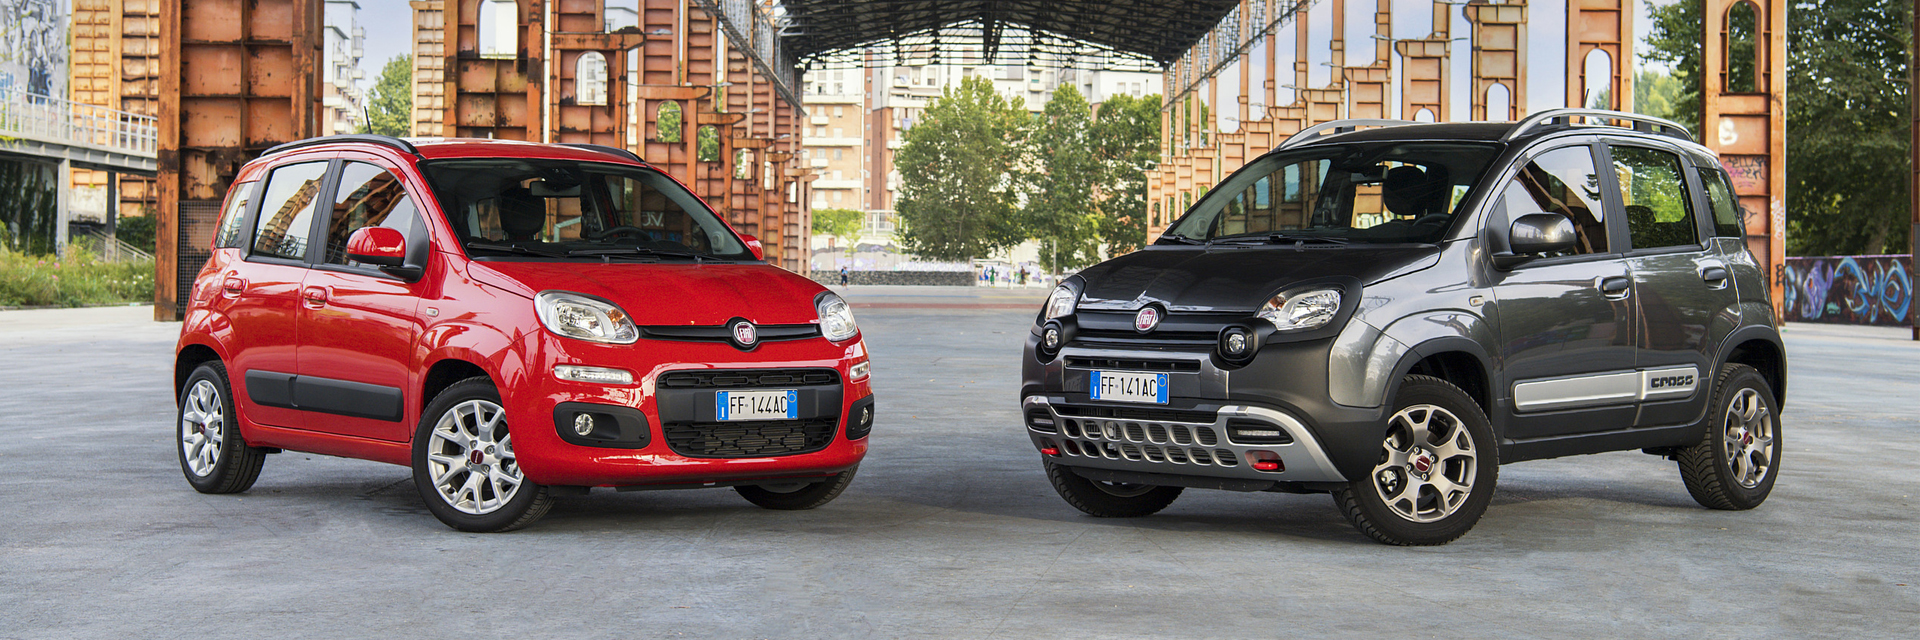 Fiat, Fiat Panda, carros usados, Carros novos, carros de serviço